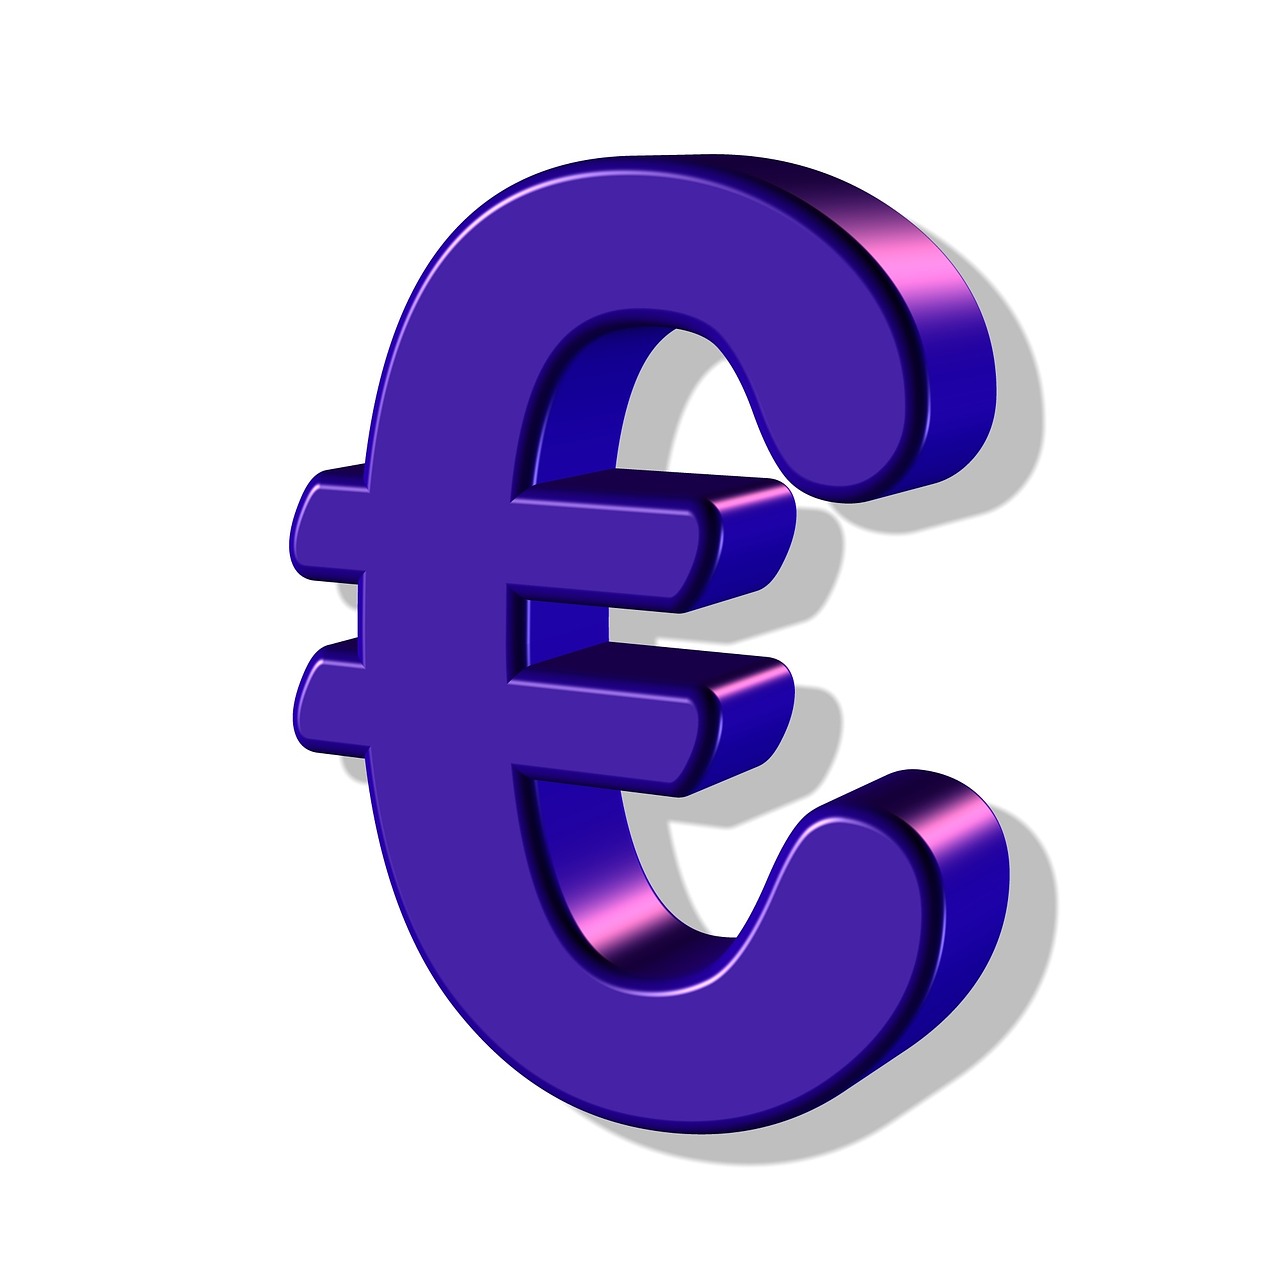 Euras, Pinigai, Simbolis, Valiuta, Verslas, Finansai, Pinigai, Bankininkystė, Investavimas, Turtas